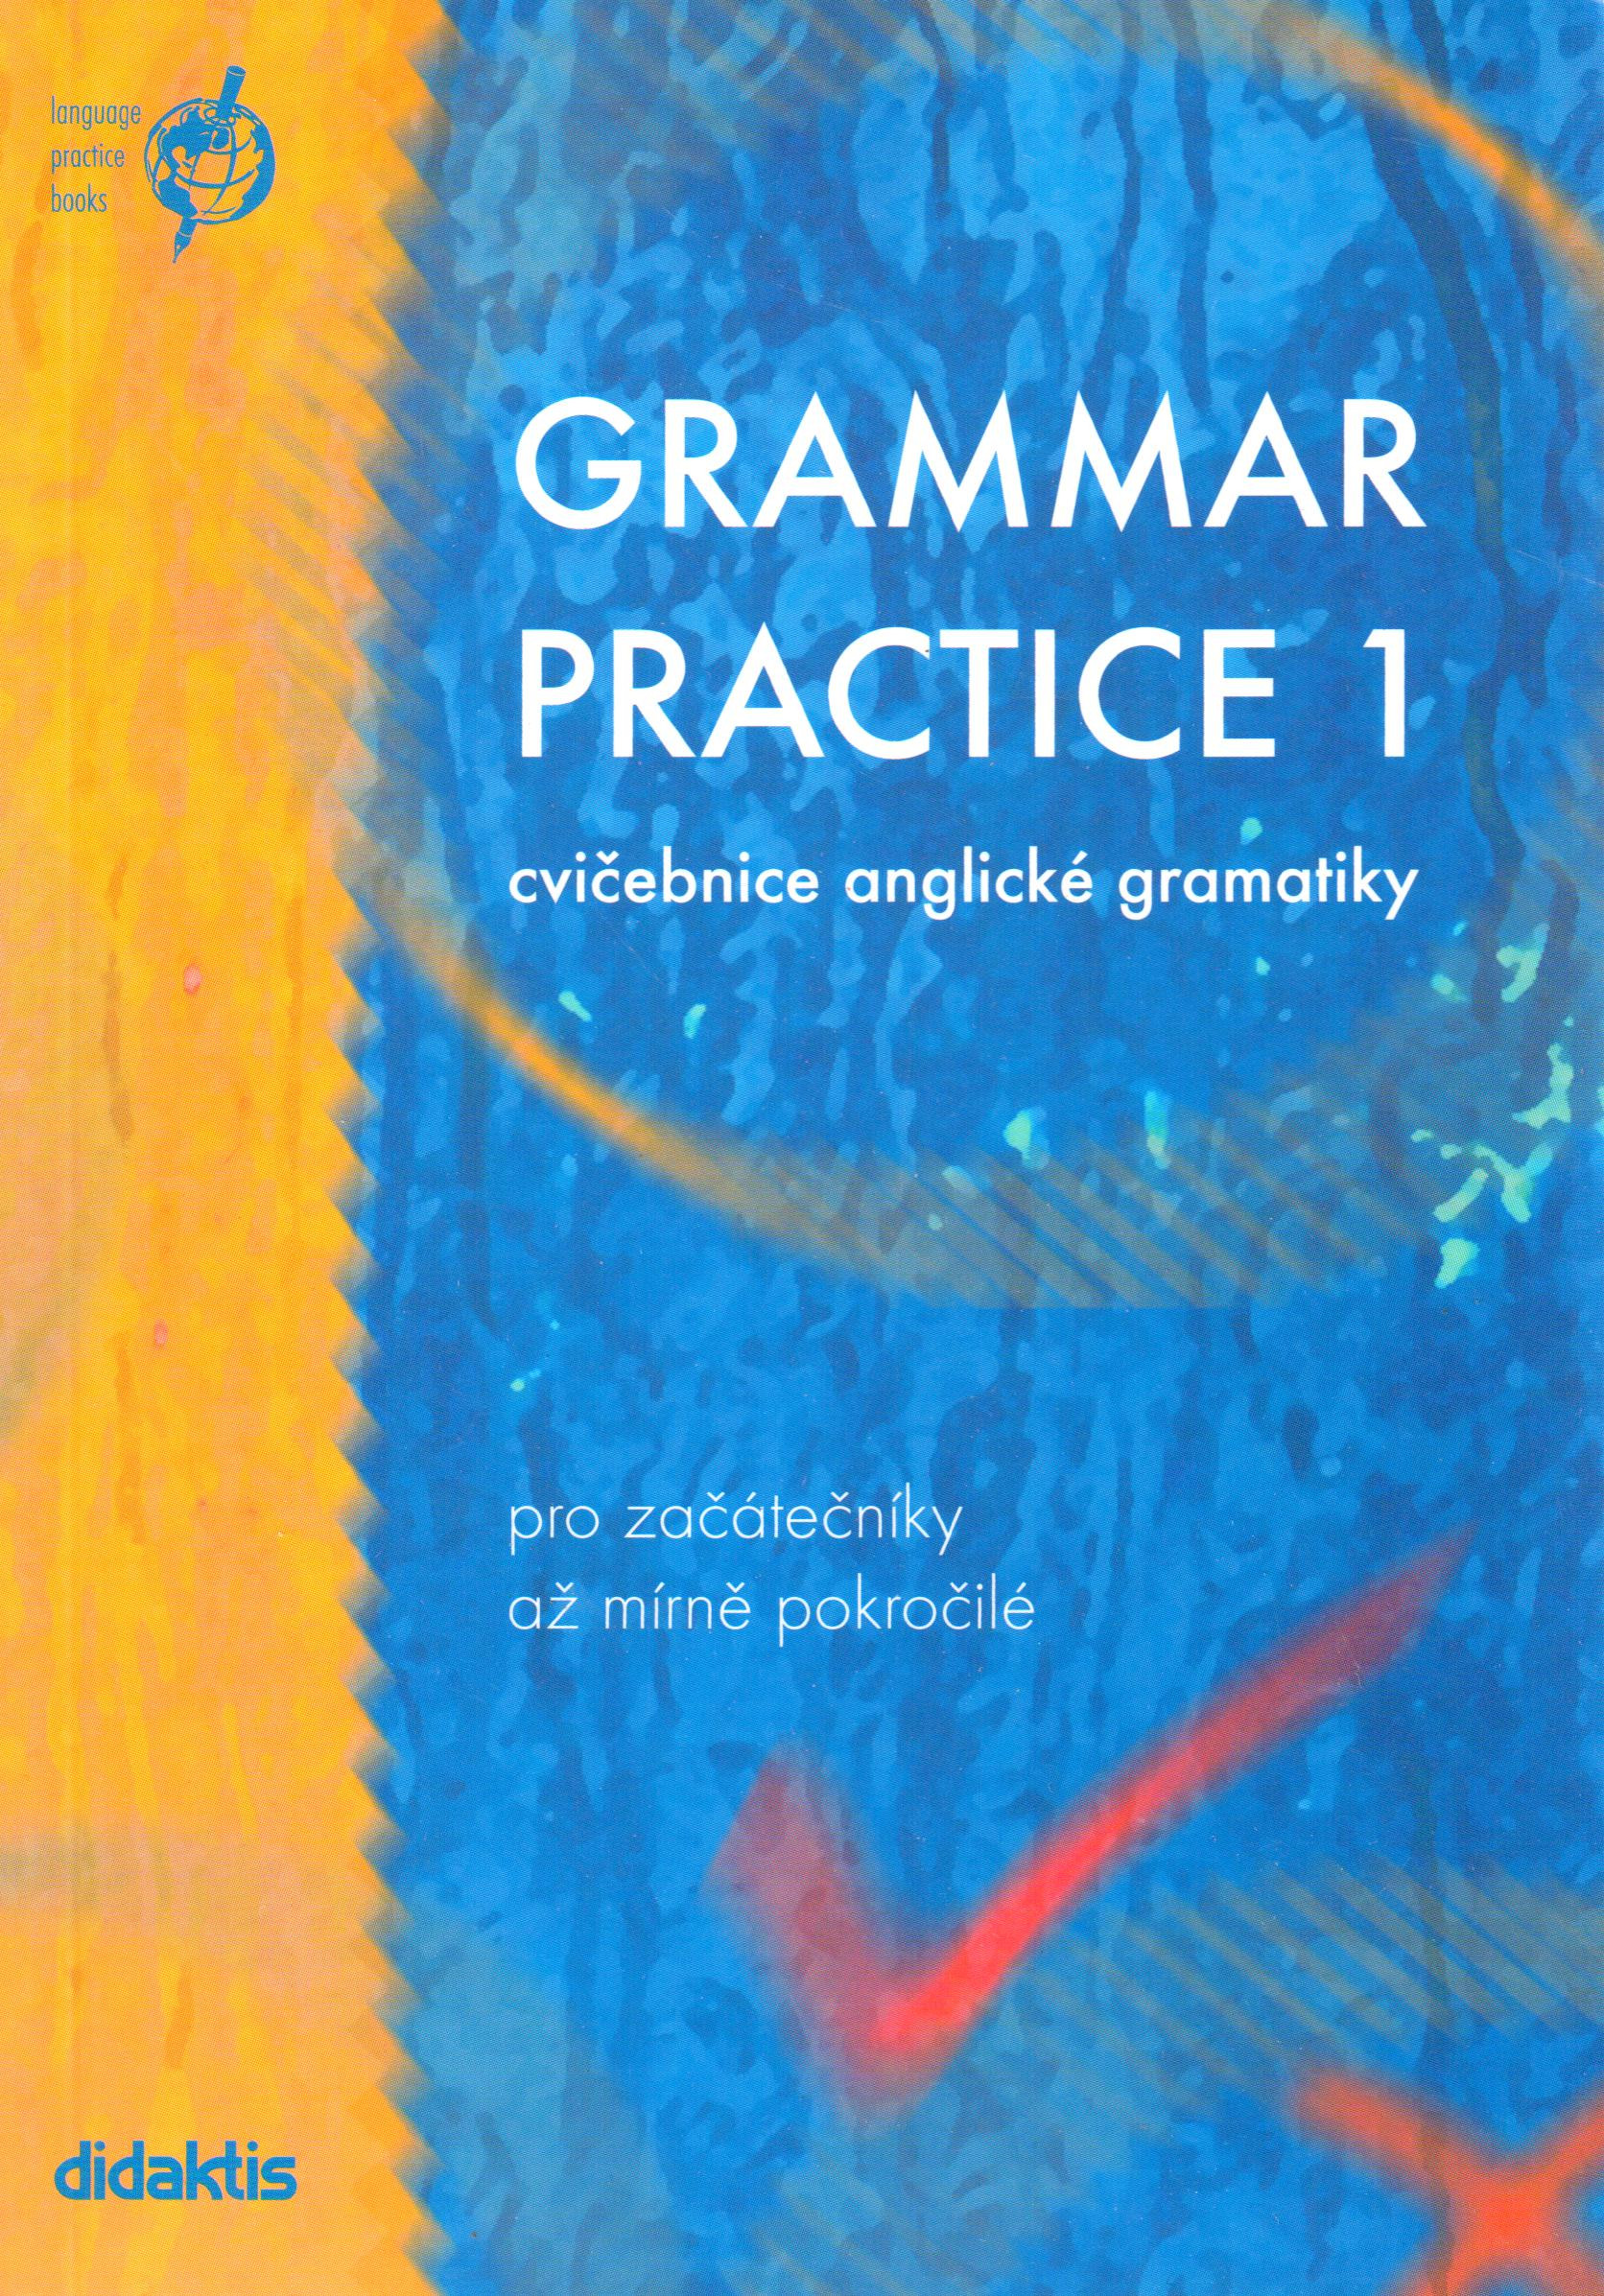 Grammar Practice 1 : cvičebnice anglické gramatiky (pro začátečníky až mírně pokročilé) - Náhled učebnice